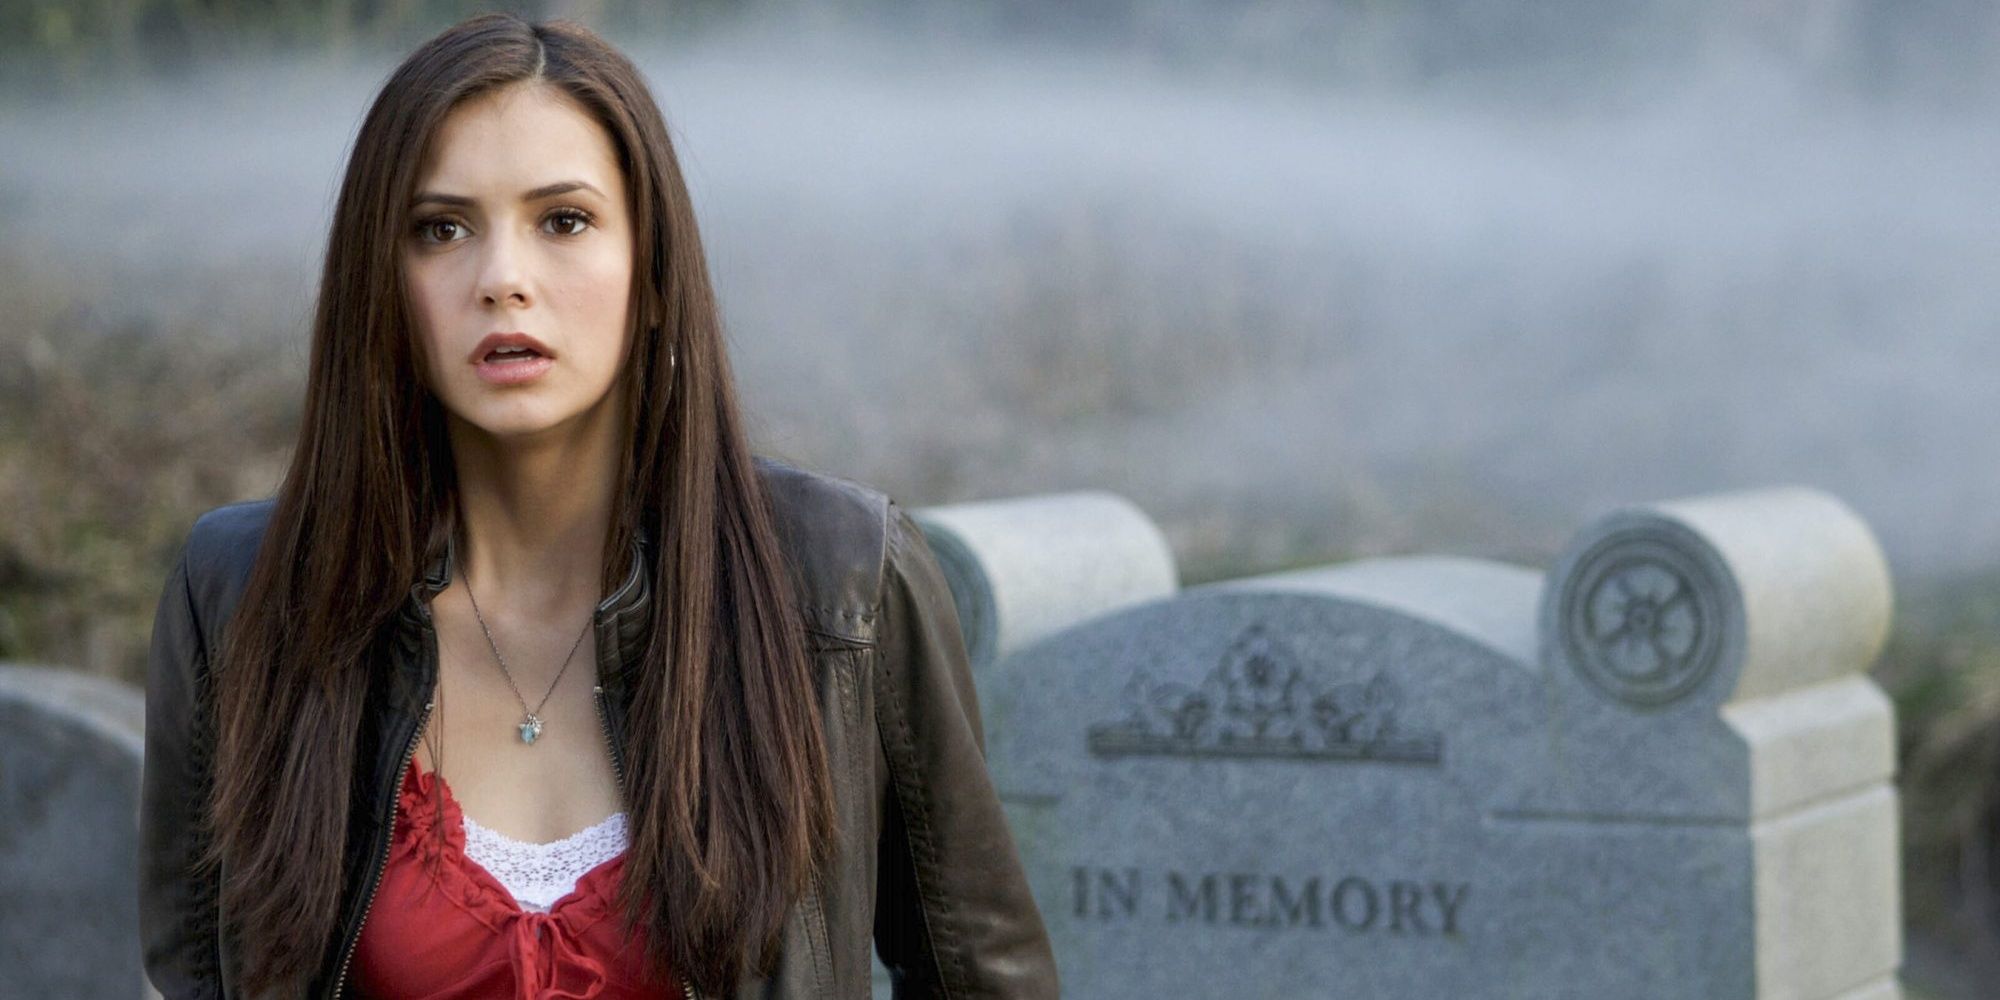 Elena in the graveyard looking shocked in The Vampire Diaries